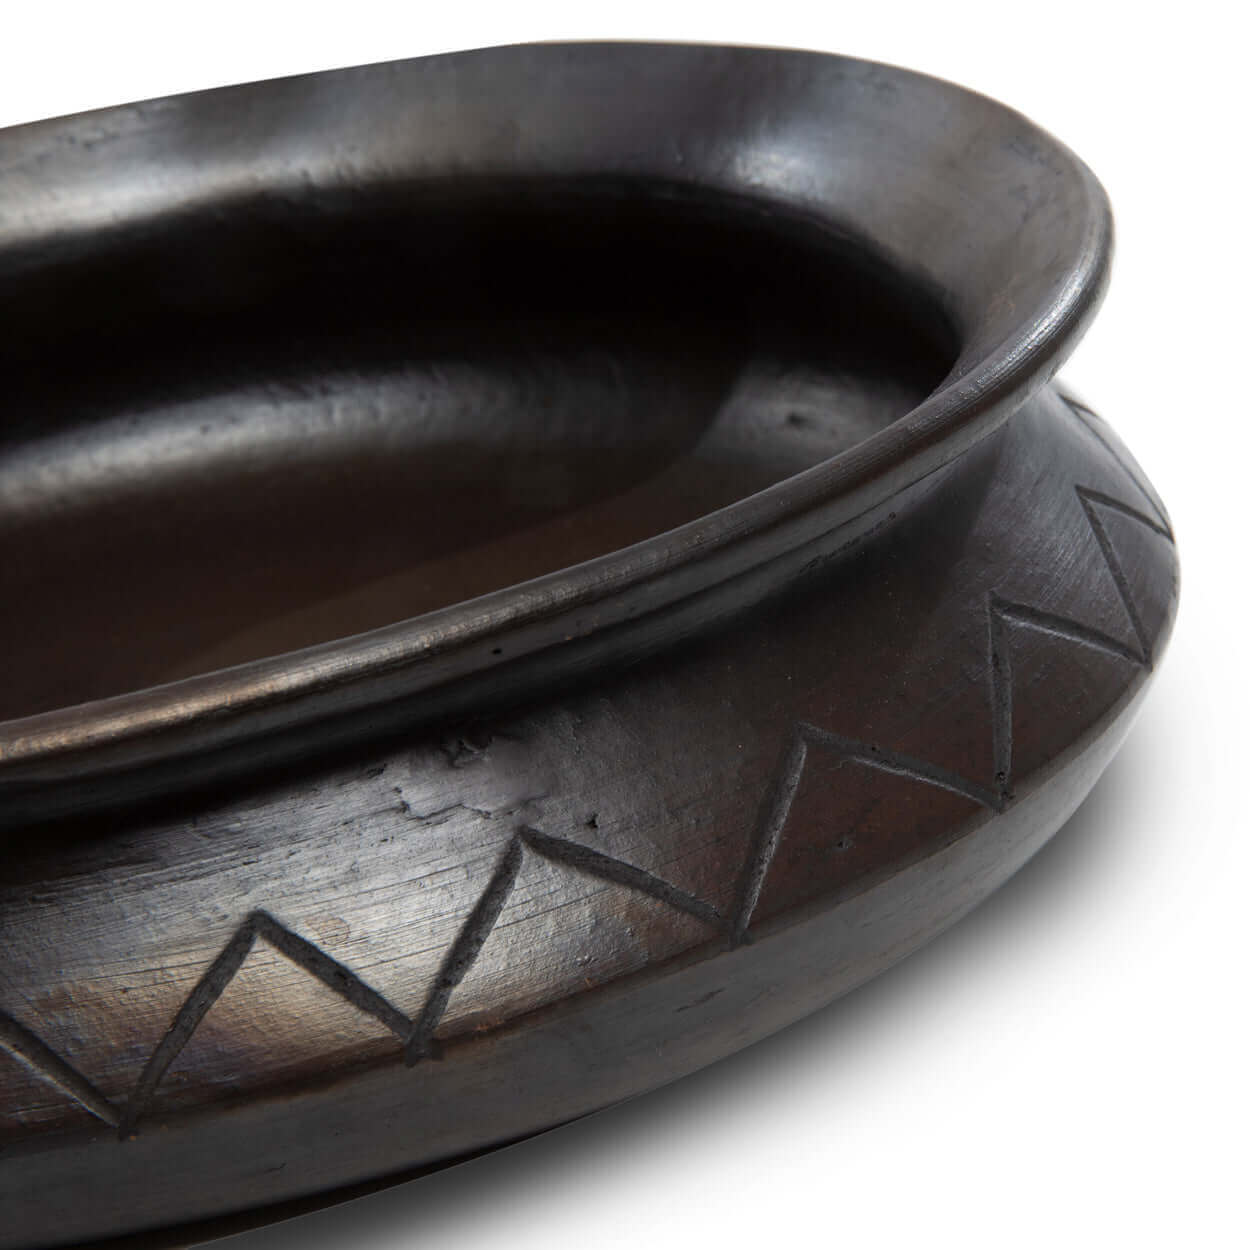 De Burned Ovale Pot Met Patroon - Zwart Bazar Bizar Voor fijnproevers is niets zo fijn als een mooi gedekte tafel met een set mooi gekozen borden, dus deze gebrande ovale pot mag zeker niet ontbreken. Wij houden absoluut van het unieke ontwerp en patroon